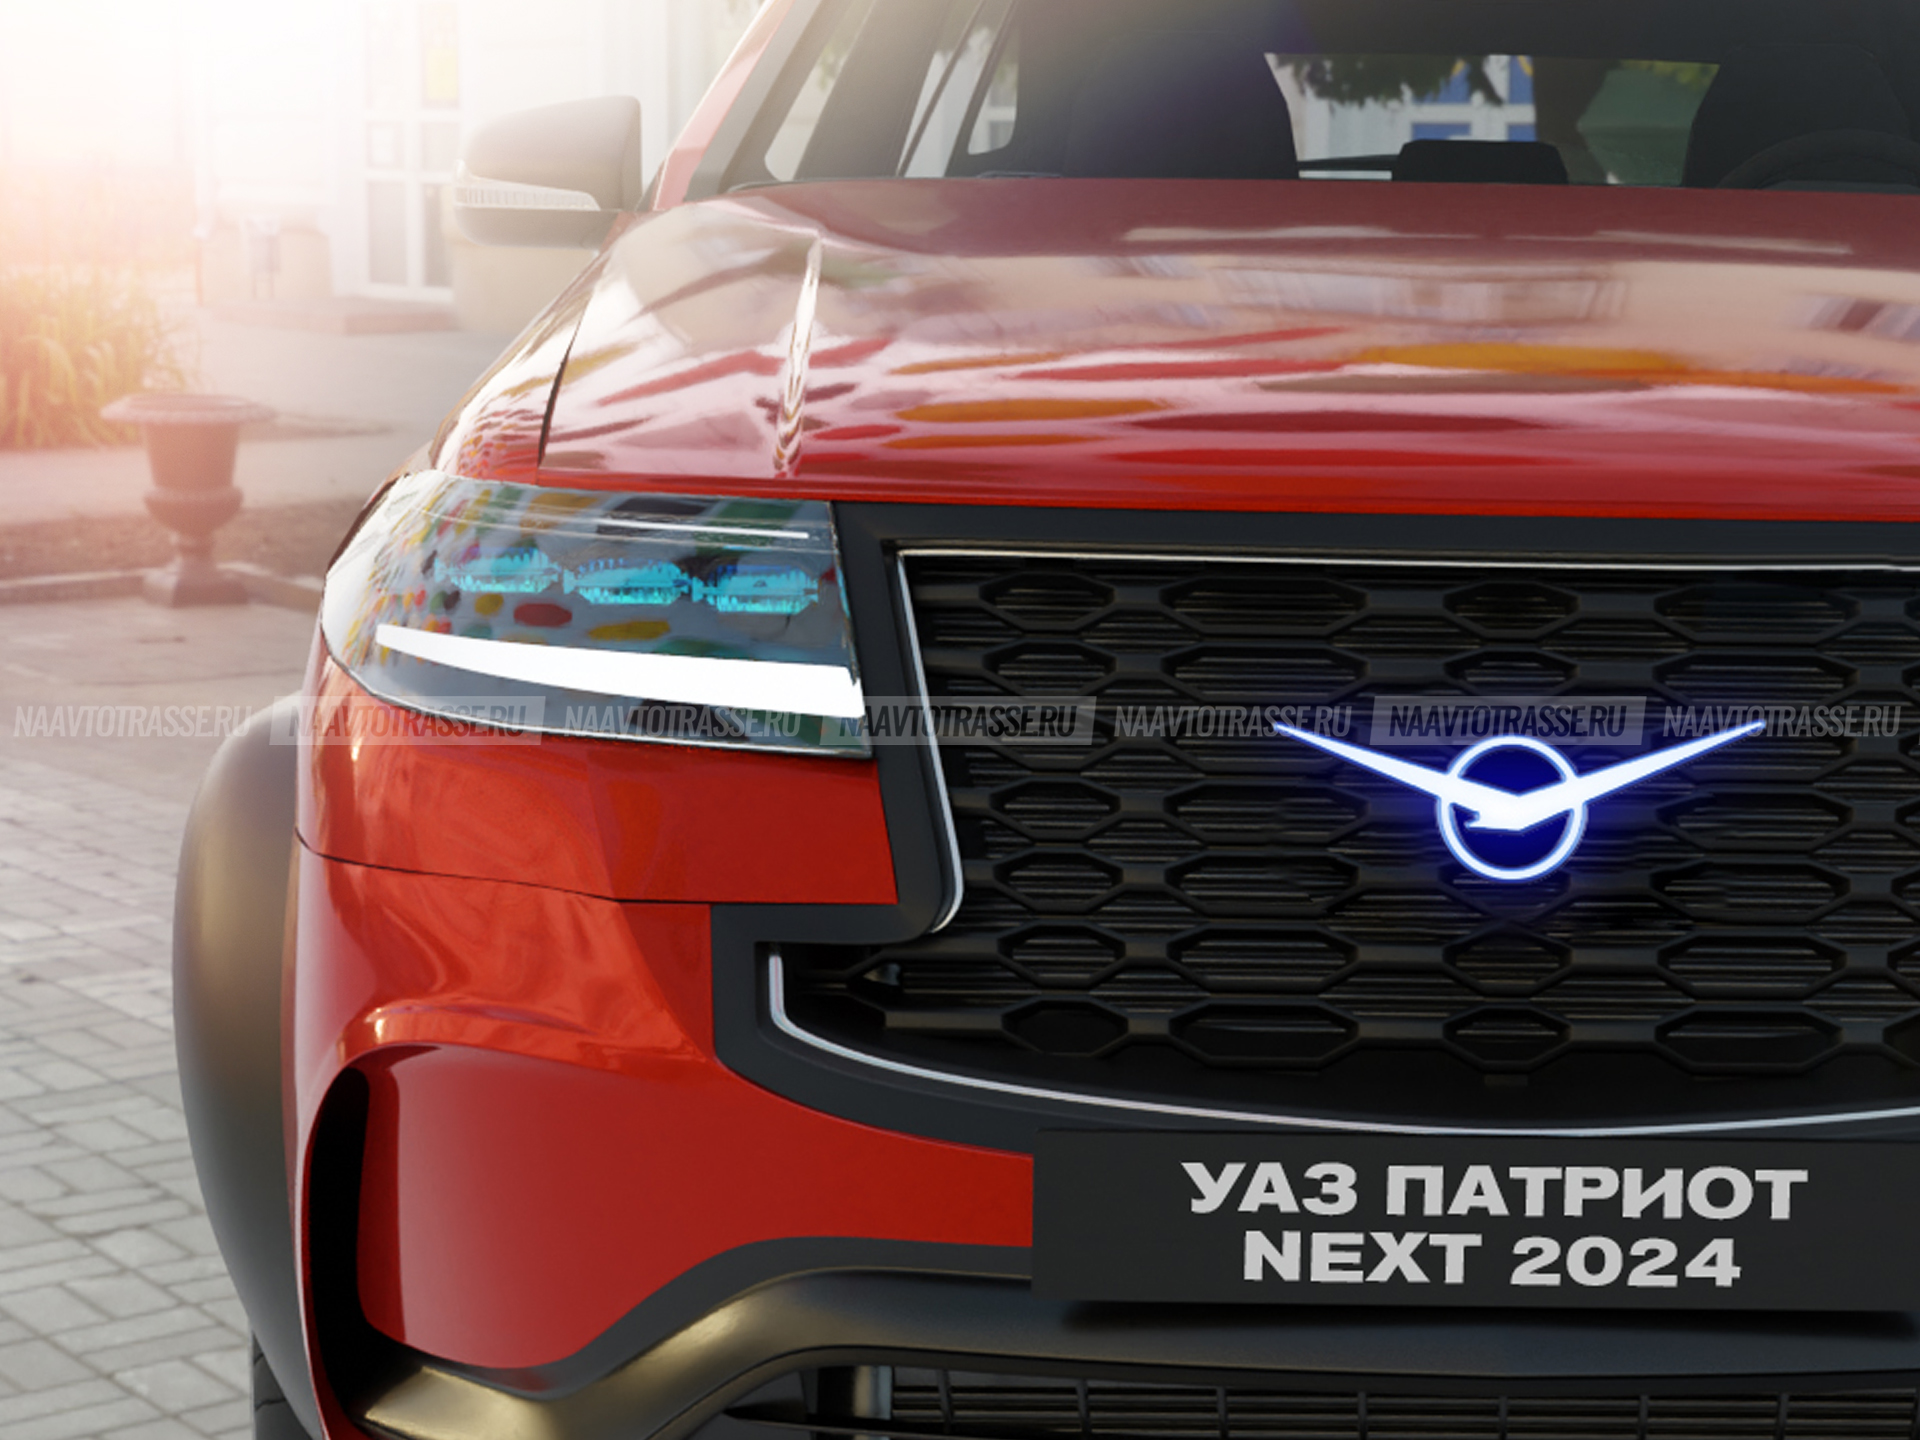 УАЗ «Патриот» получит дизельный мотор и автоматическую трансмиссию